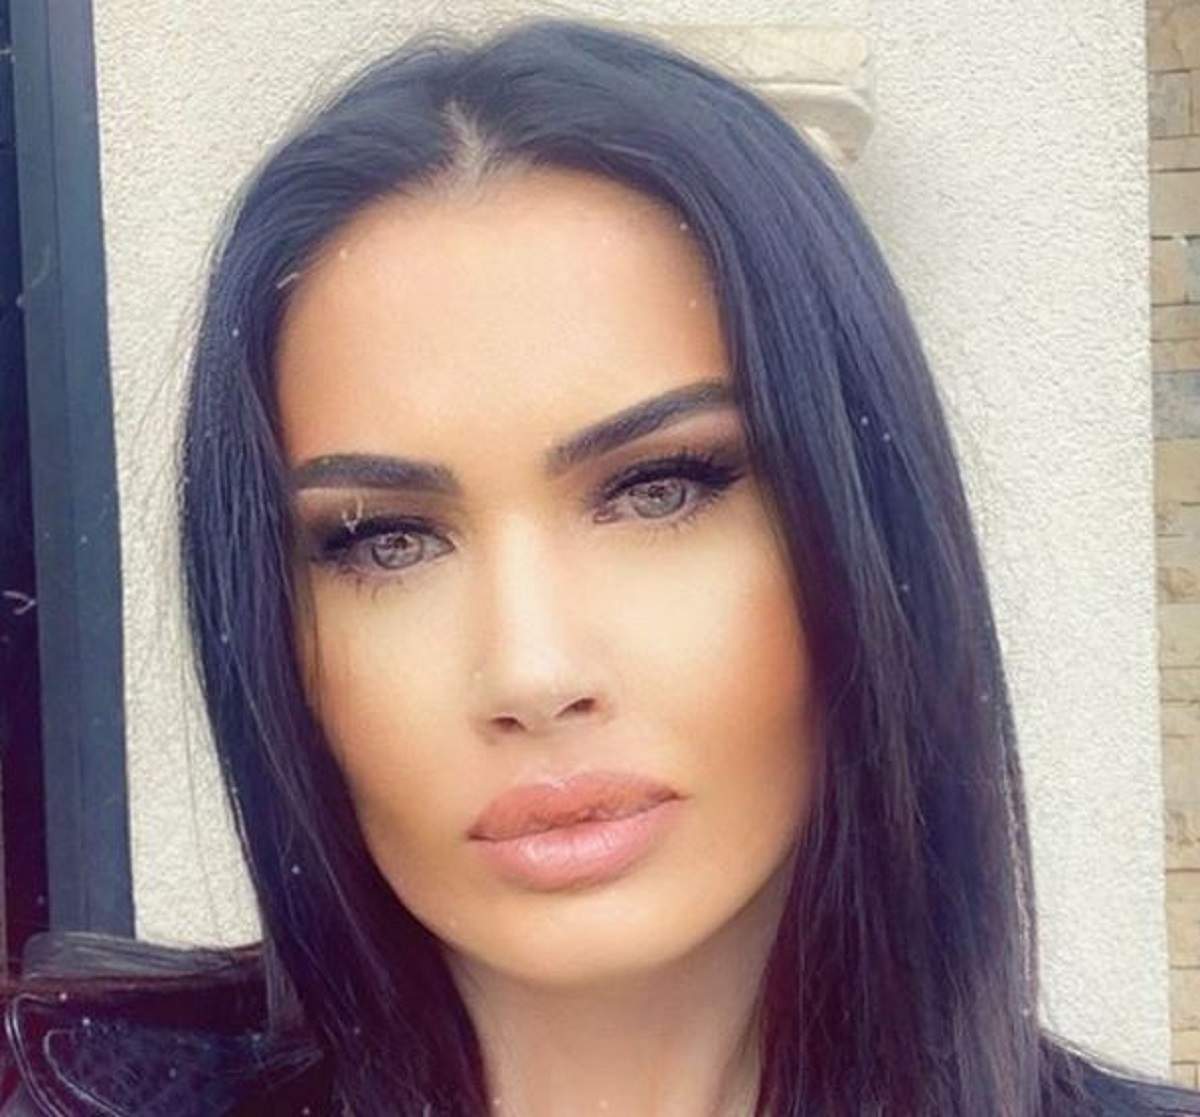 Oana Zăvoranu într-un selfie. Vedeta are părul drept, lăsat pe umeri și poartă o geacă din piele, de culoare neagră.